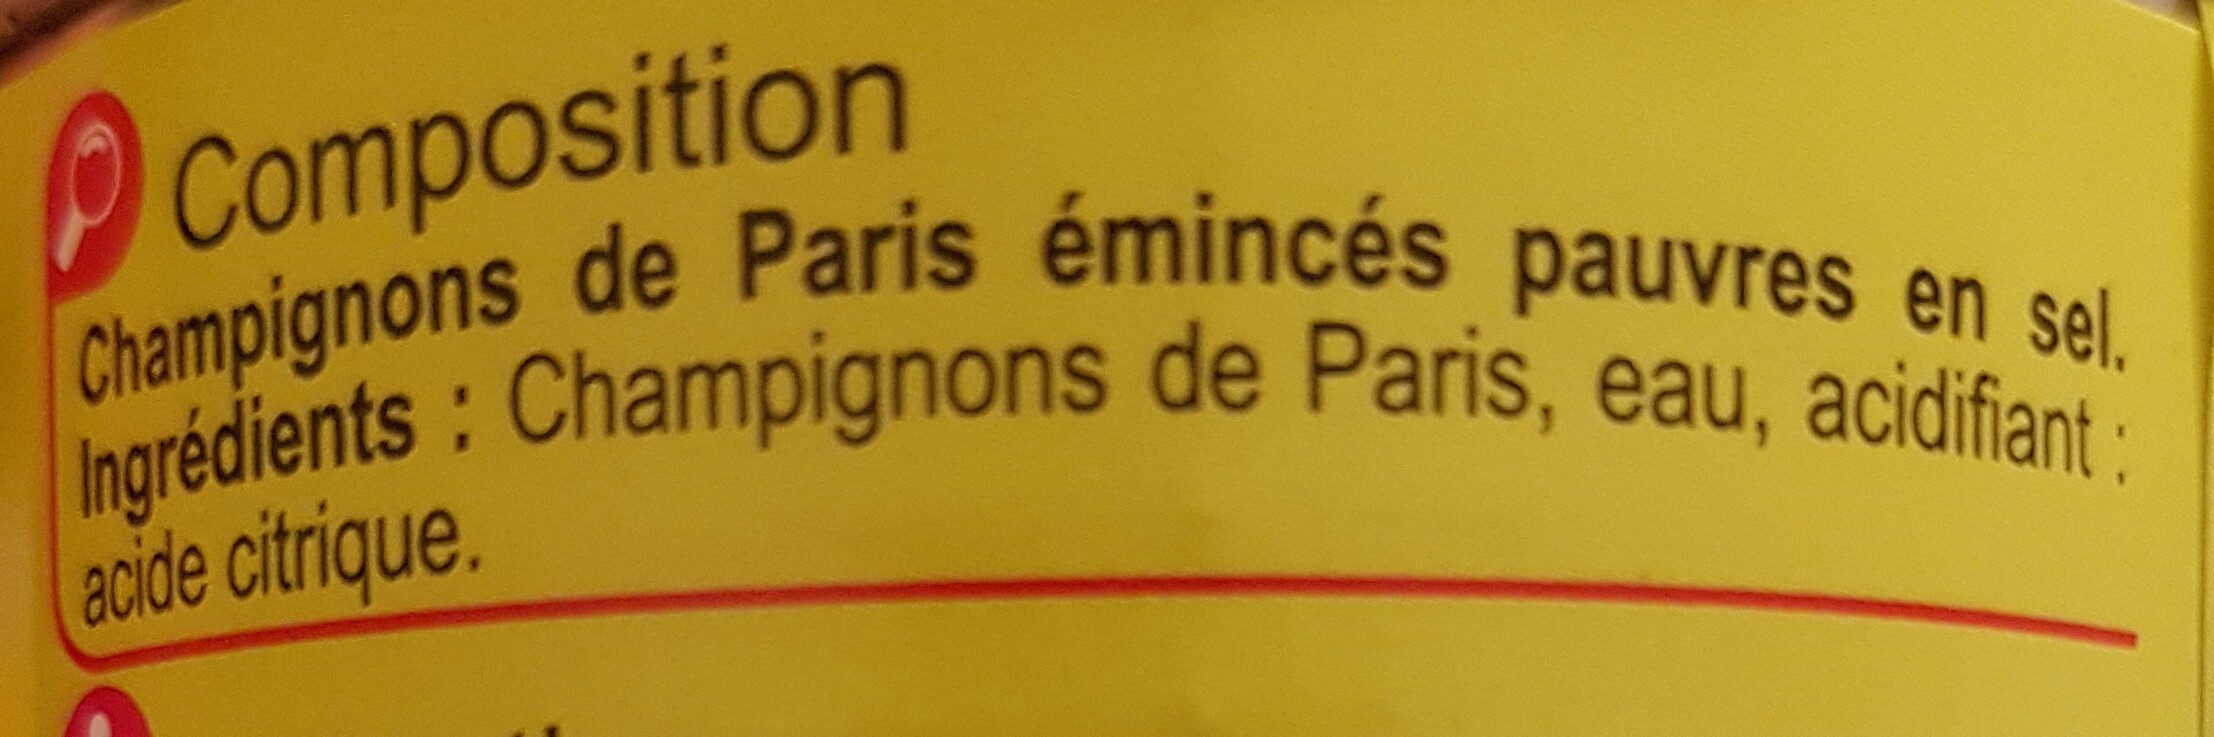 Champignons de Paris Emincés - Ingredients - fr